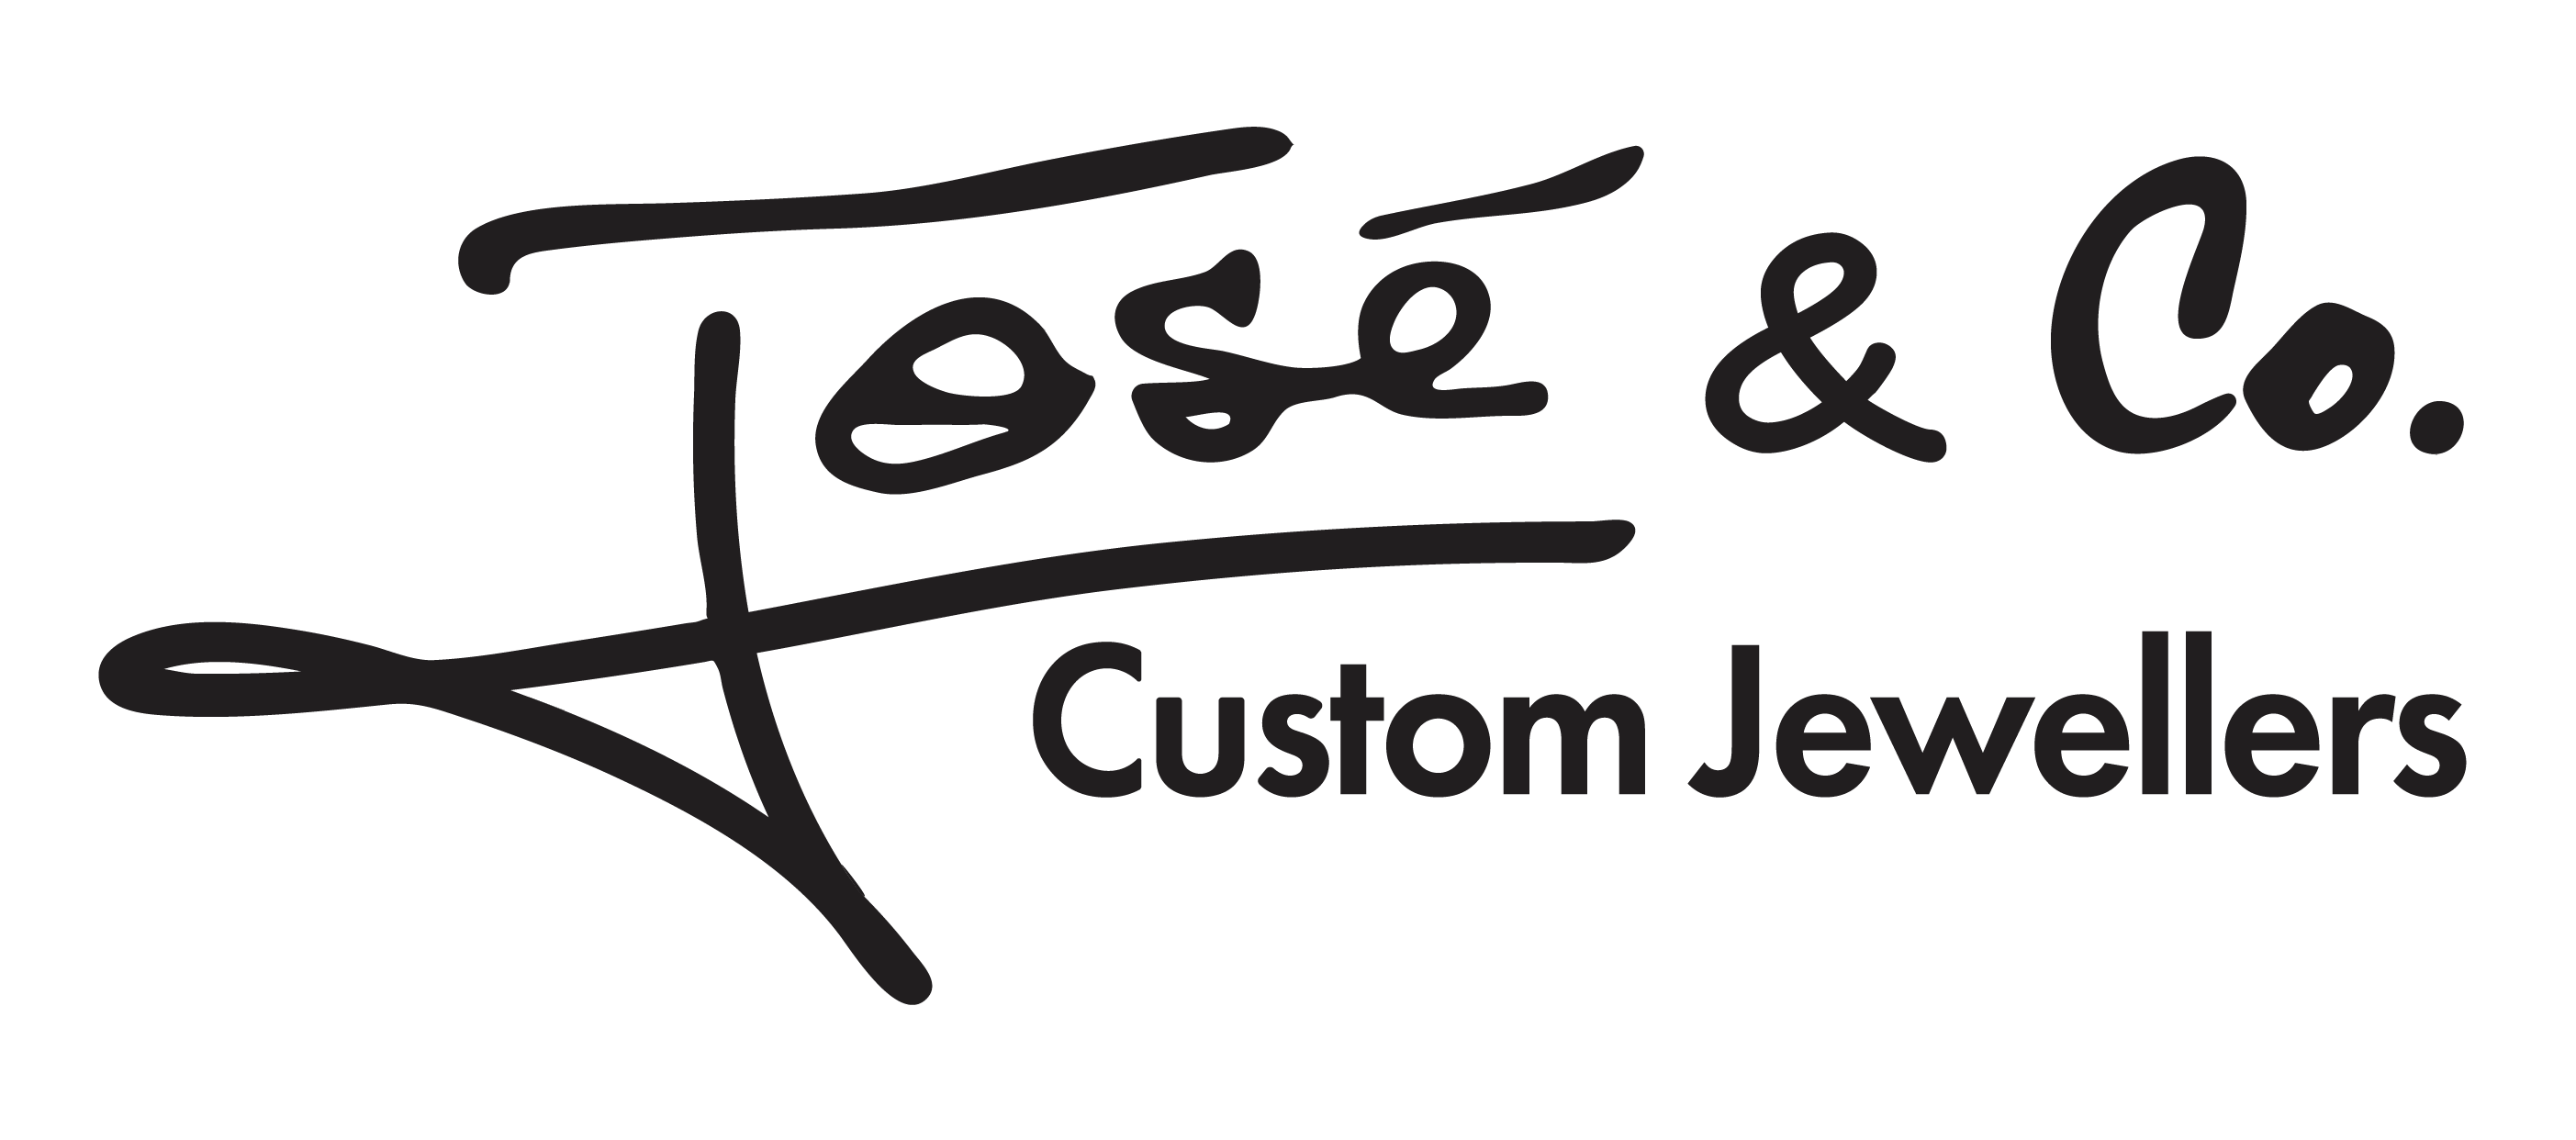 Jose & Co Custom Jewellers